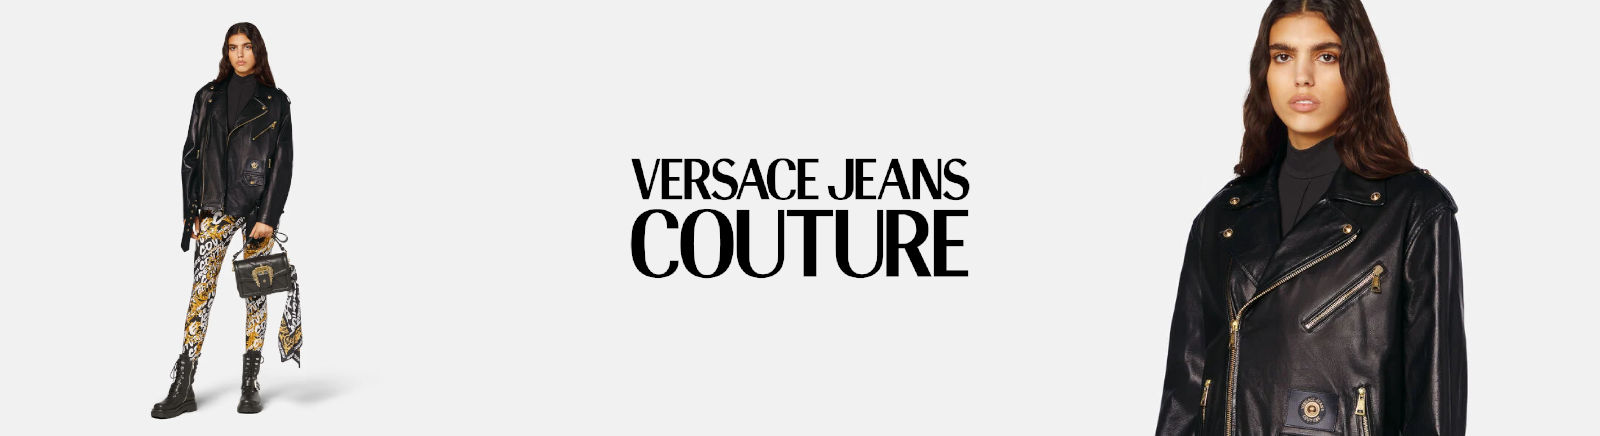 Versace Jeans Damenschuhe online kaufen im GISY Schuhe Shop